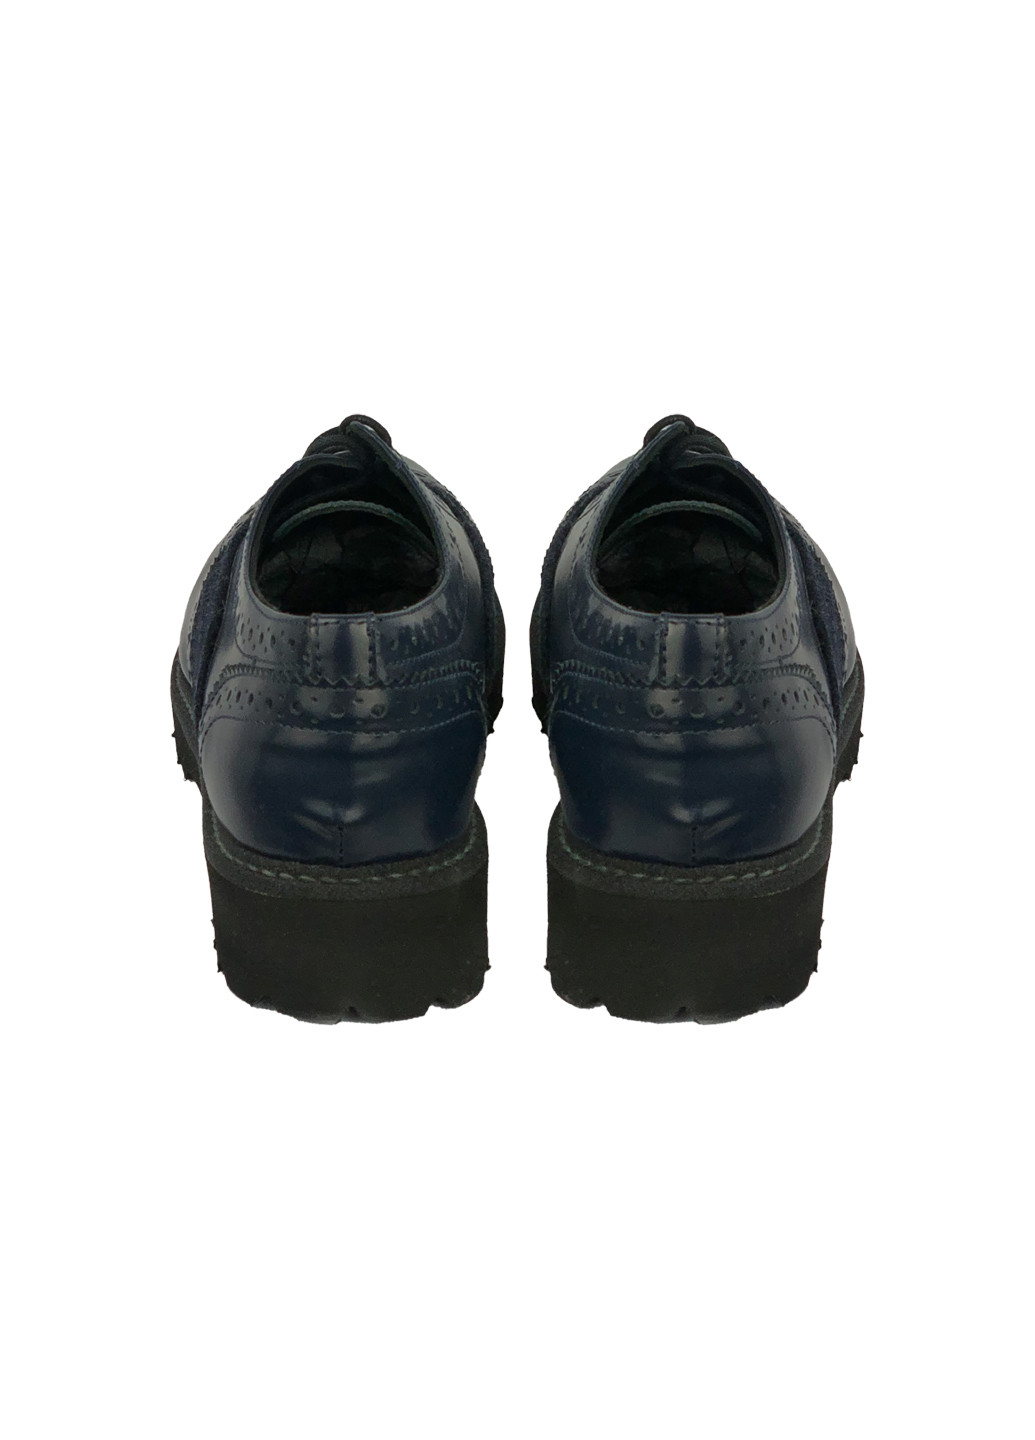 Кожаные туфли-броги Trend Baldinini на низком каблуке